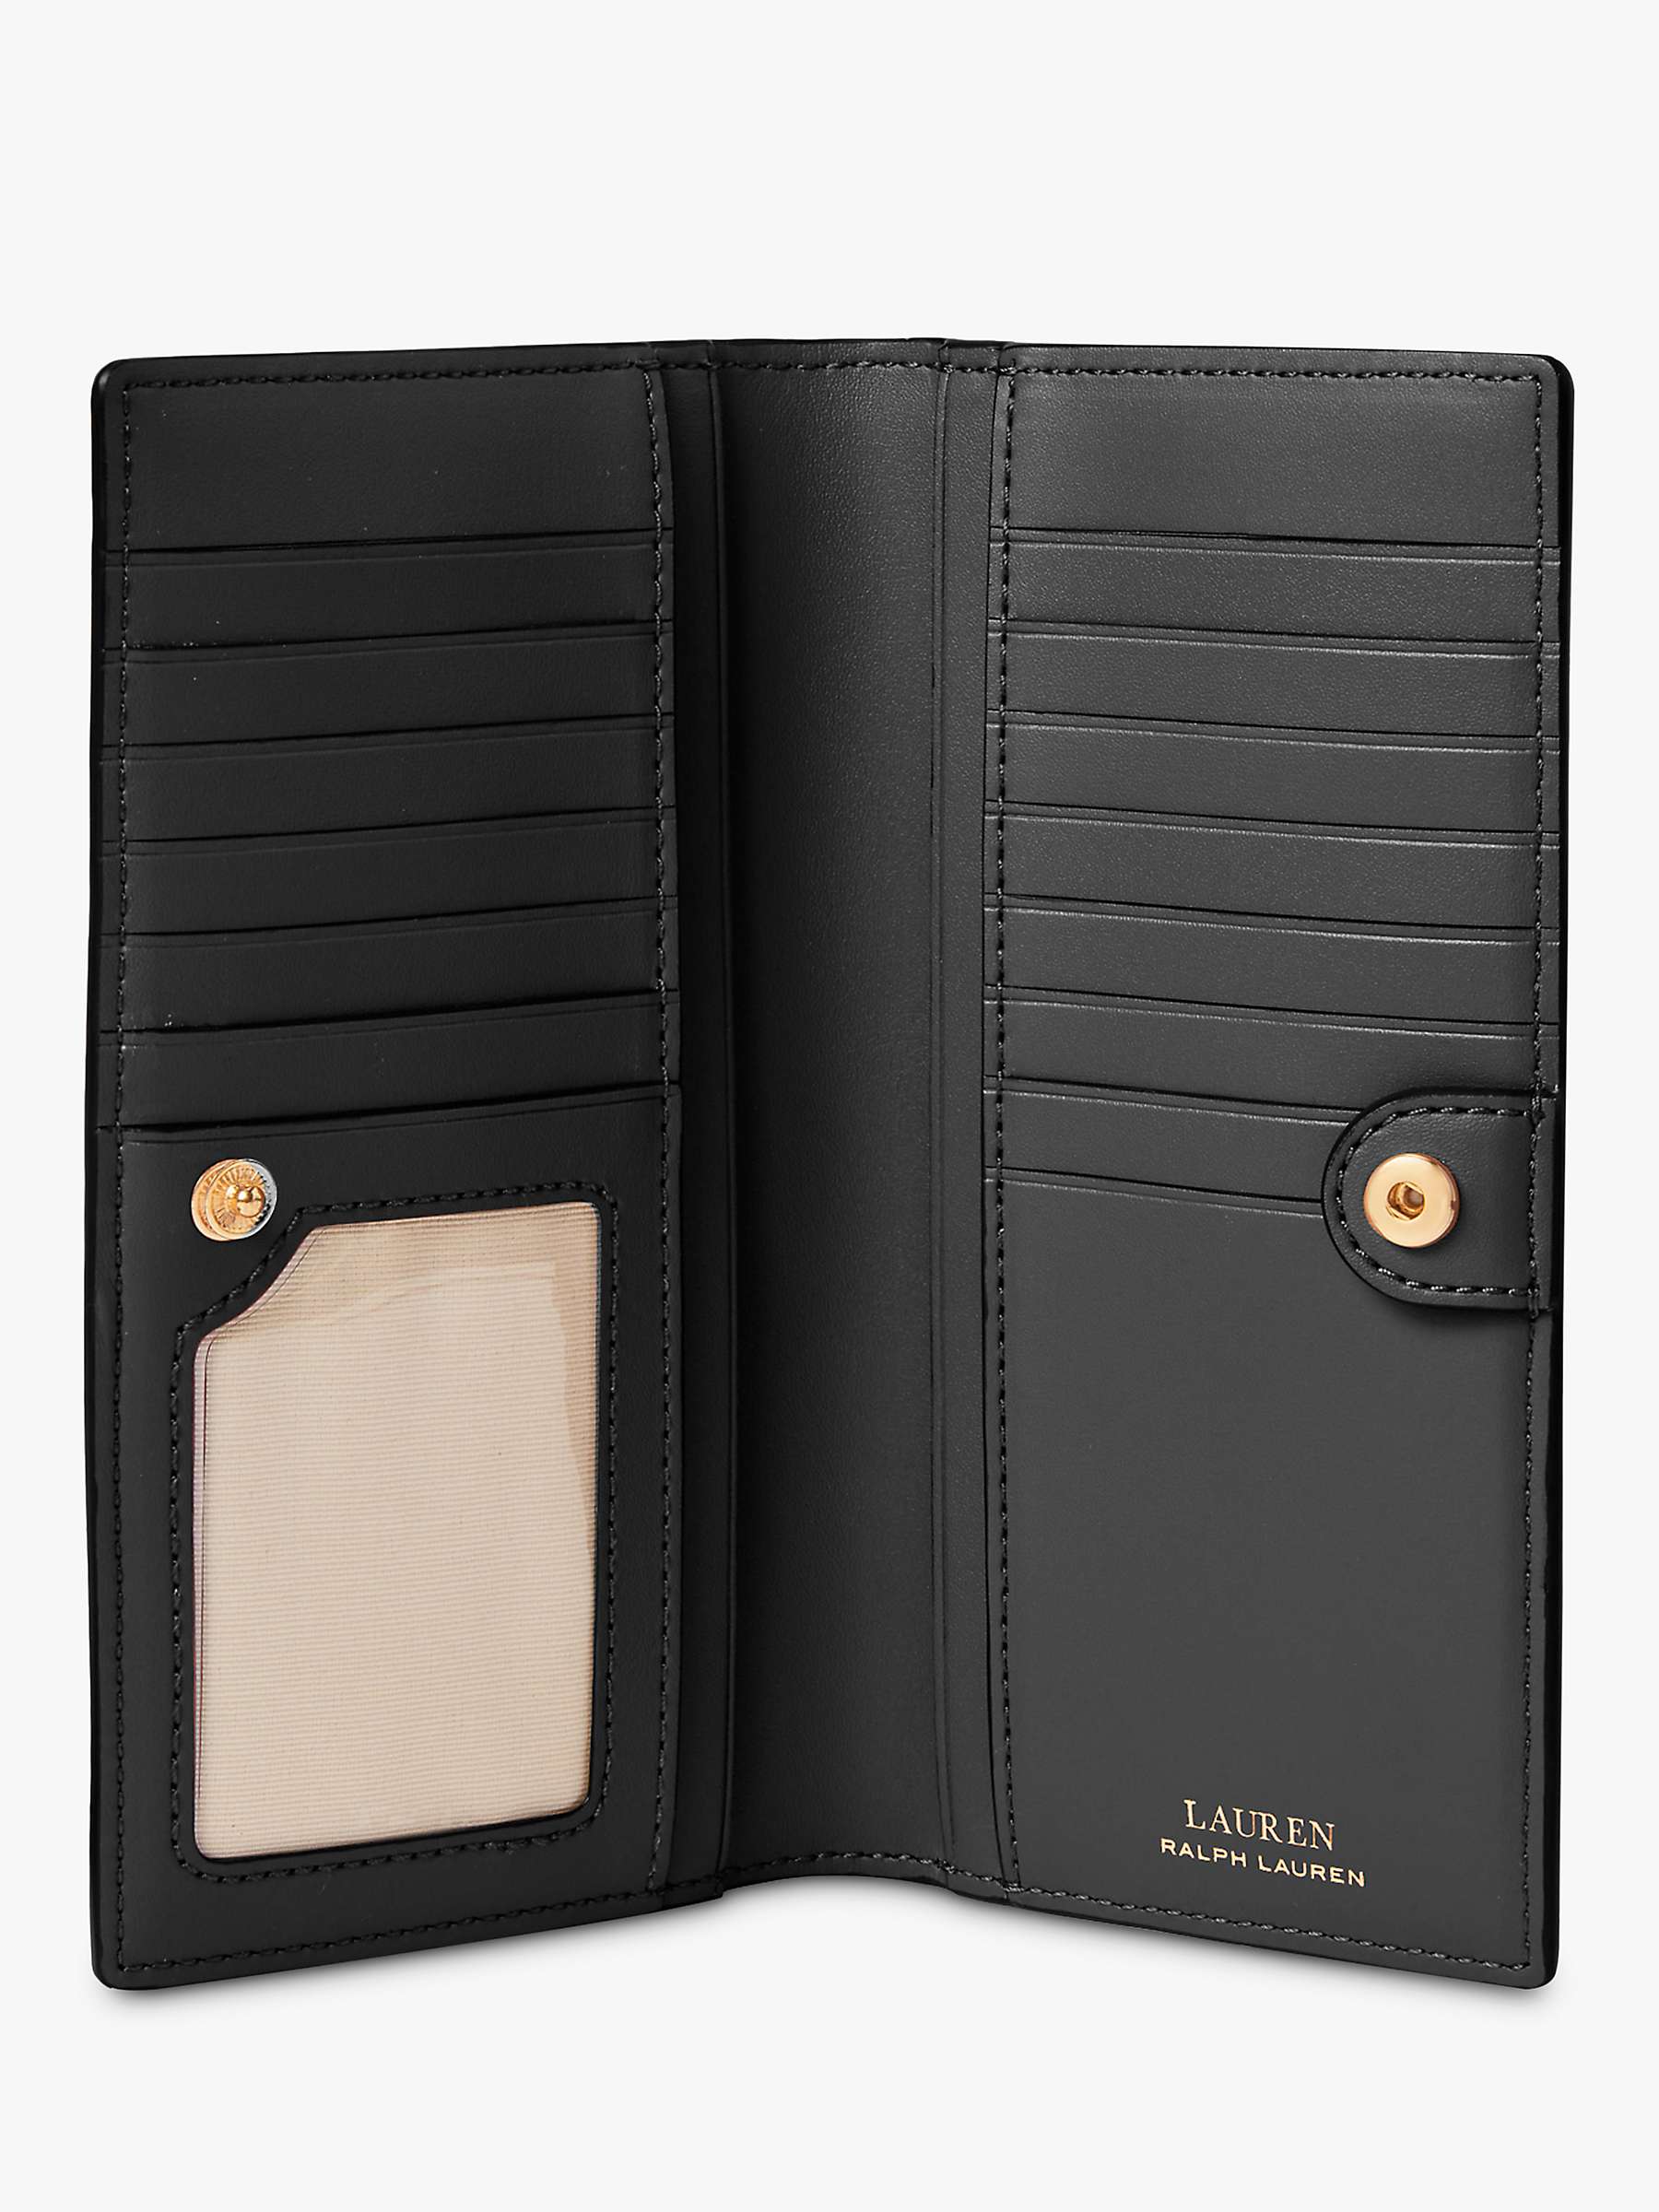 Buy Lauren Ralph Lauren Slim Cross Hatch Leather Bi-Fold Wallet, Black Online at johnlewis.com